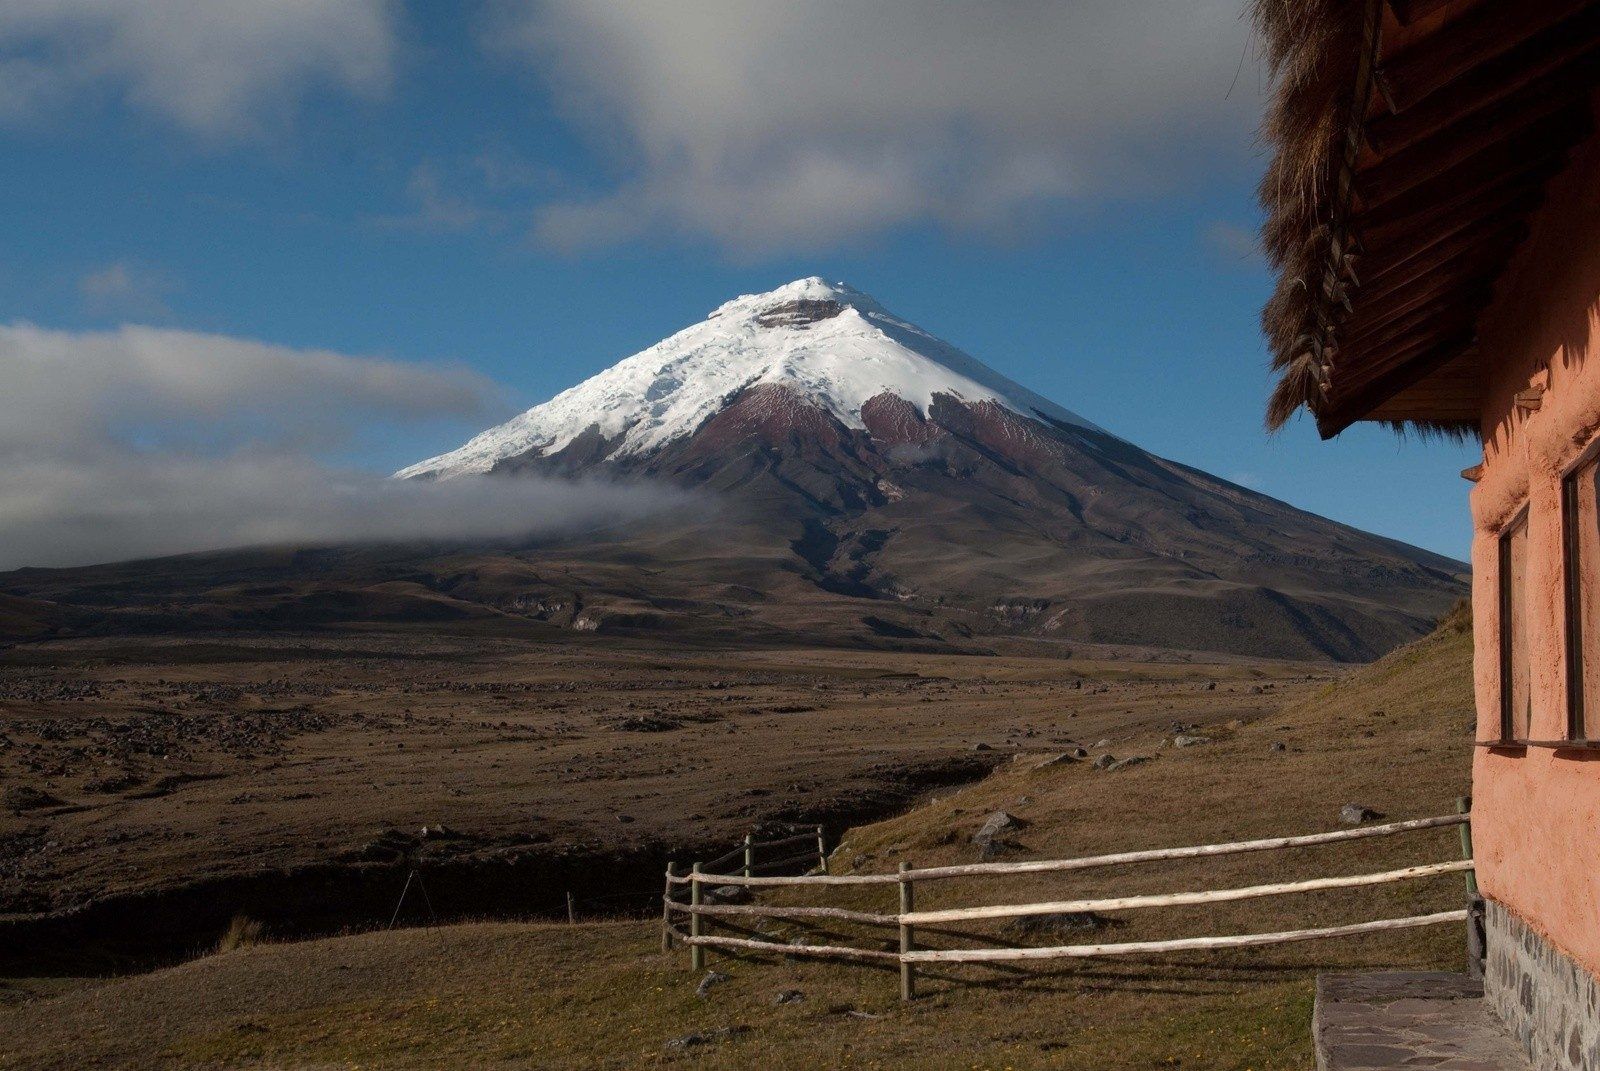 Cotopaxi (5897m), the highest volcano in Ecuador.